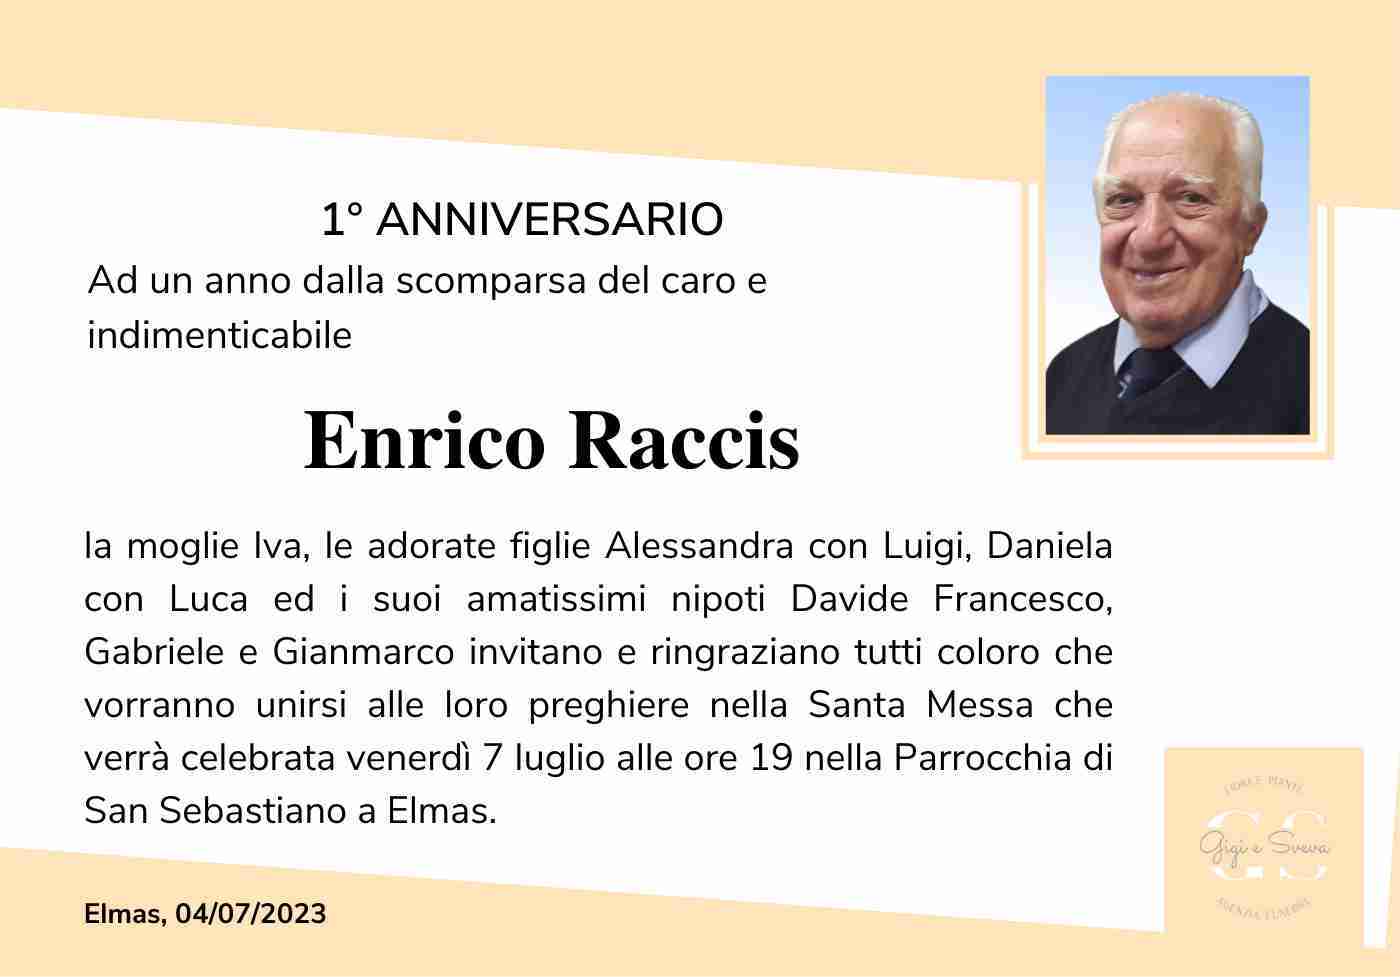 Enrico Raccis